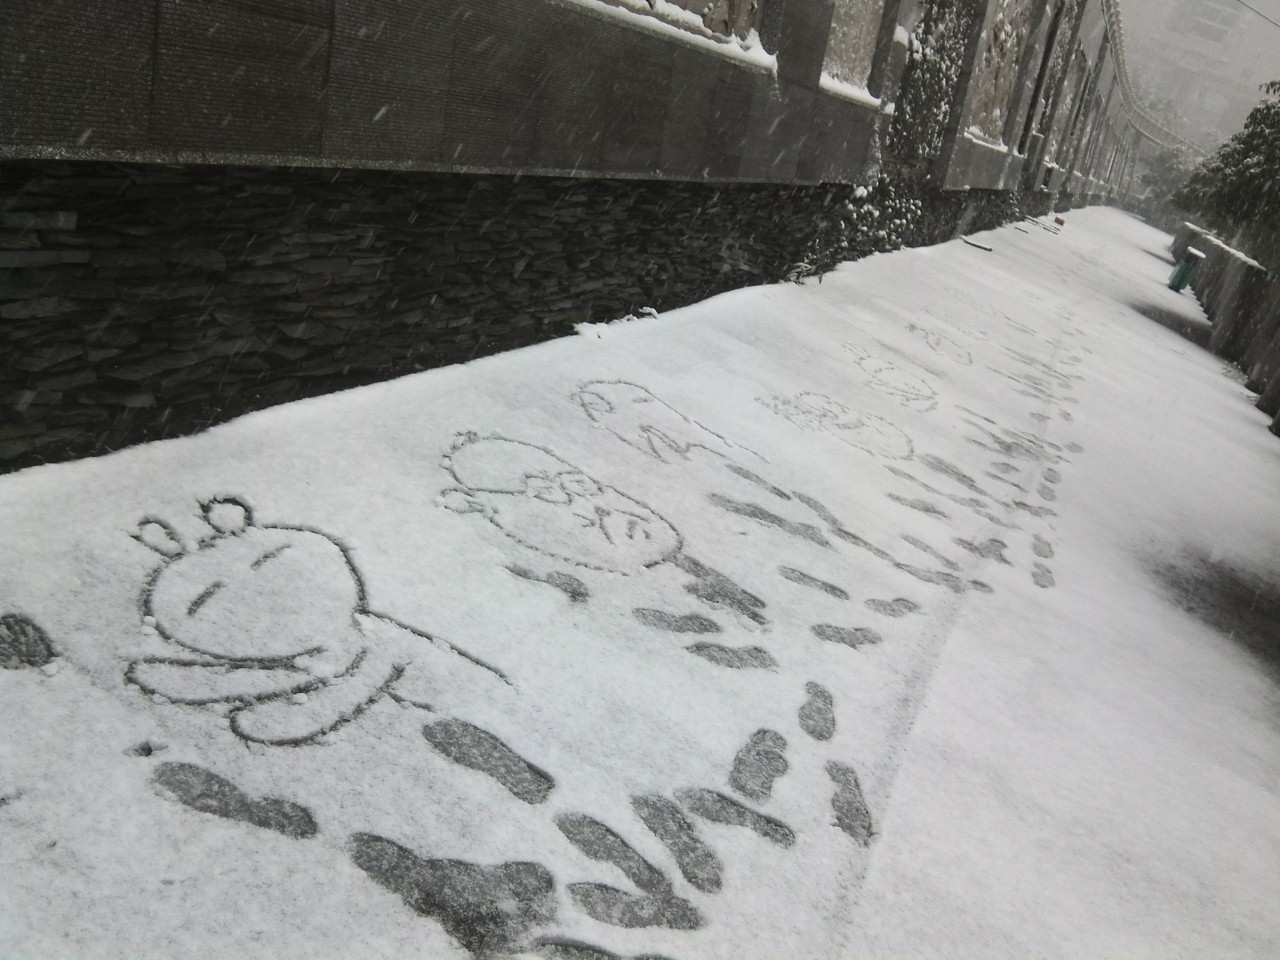 冬季雪景手绘插画图片-千库网